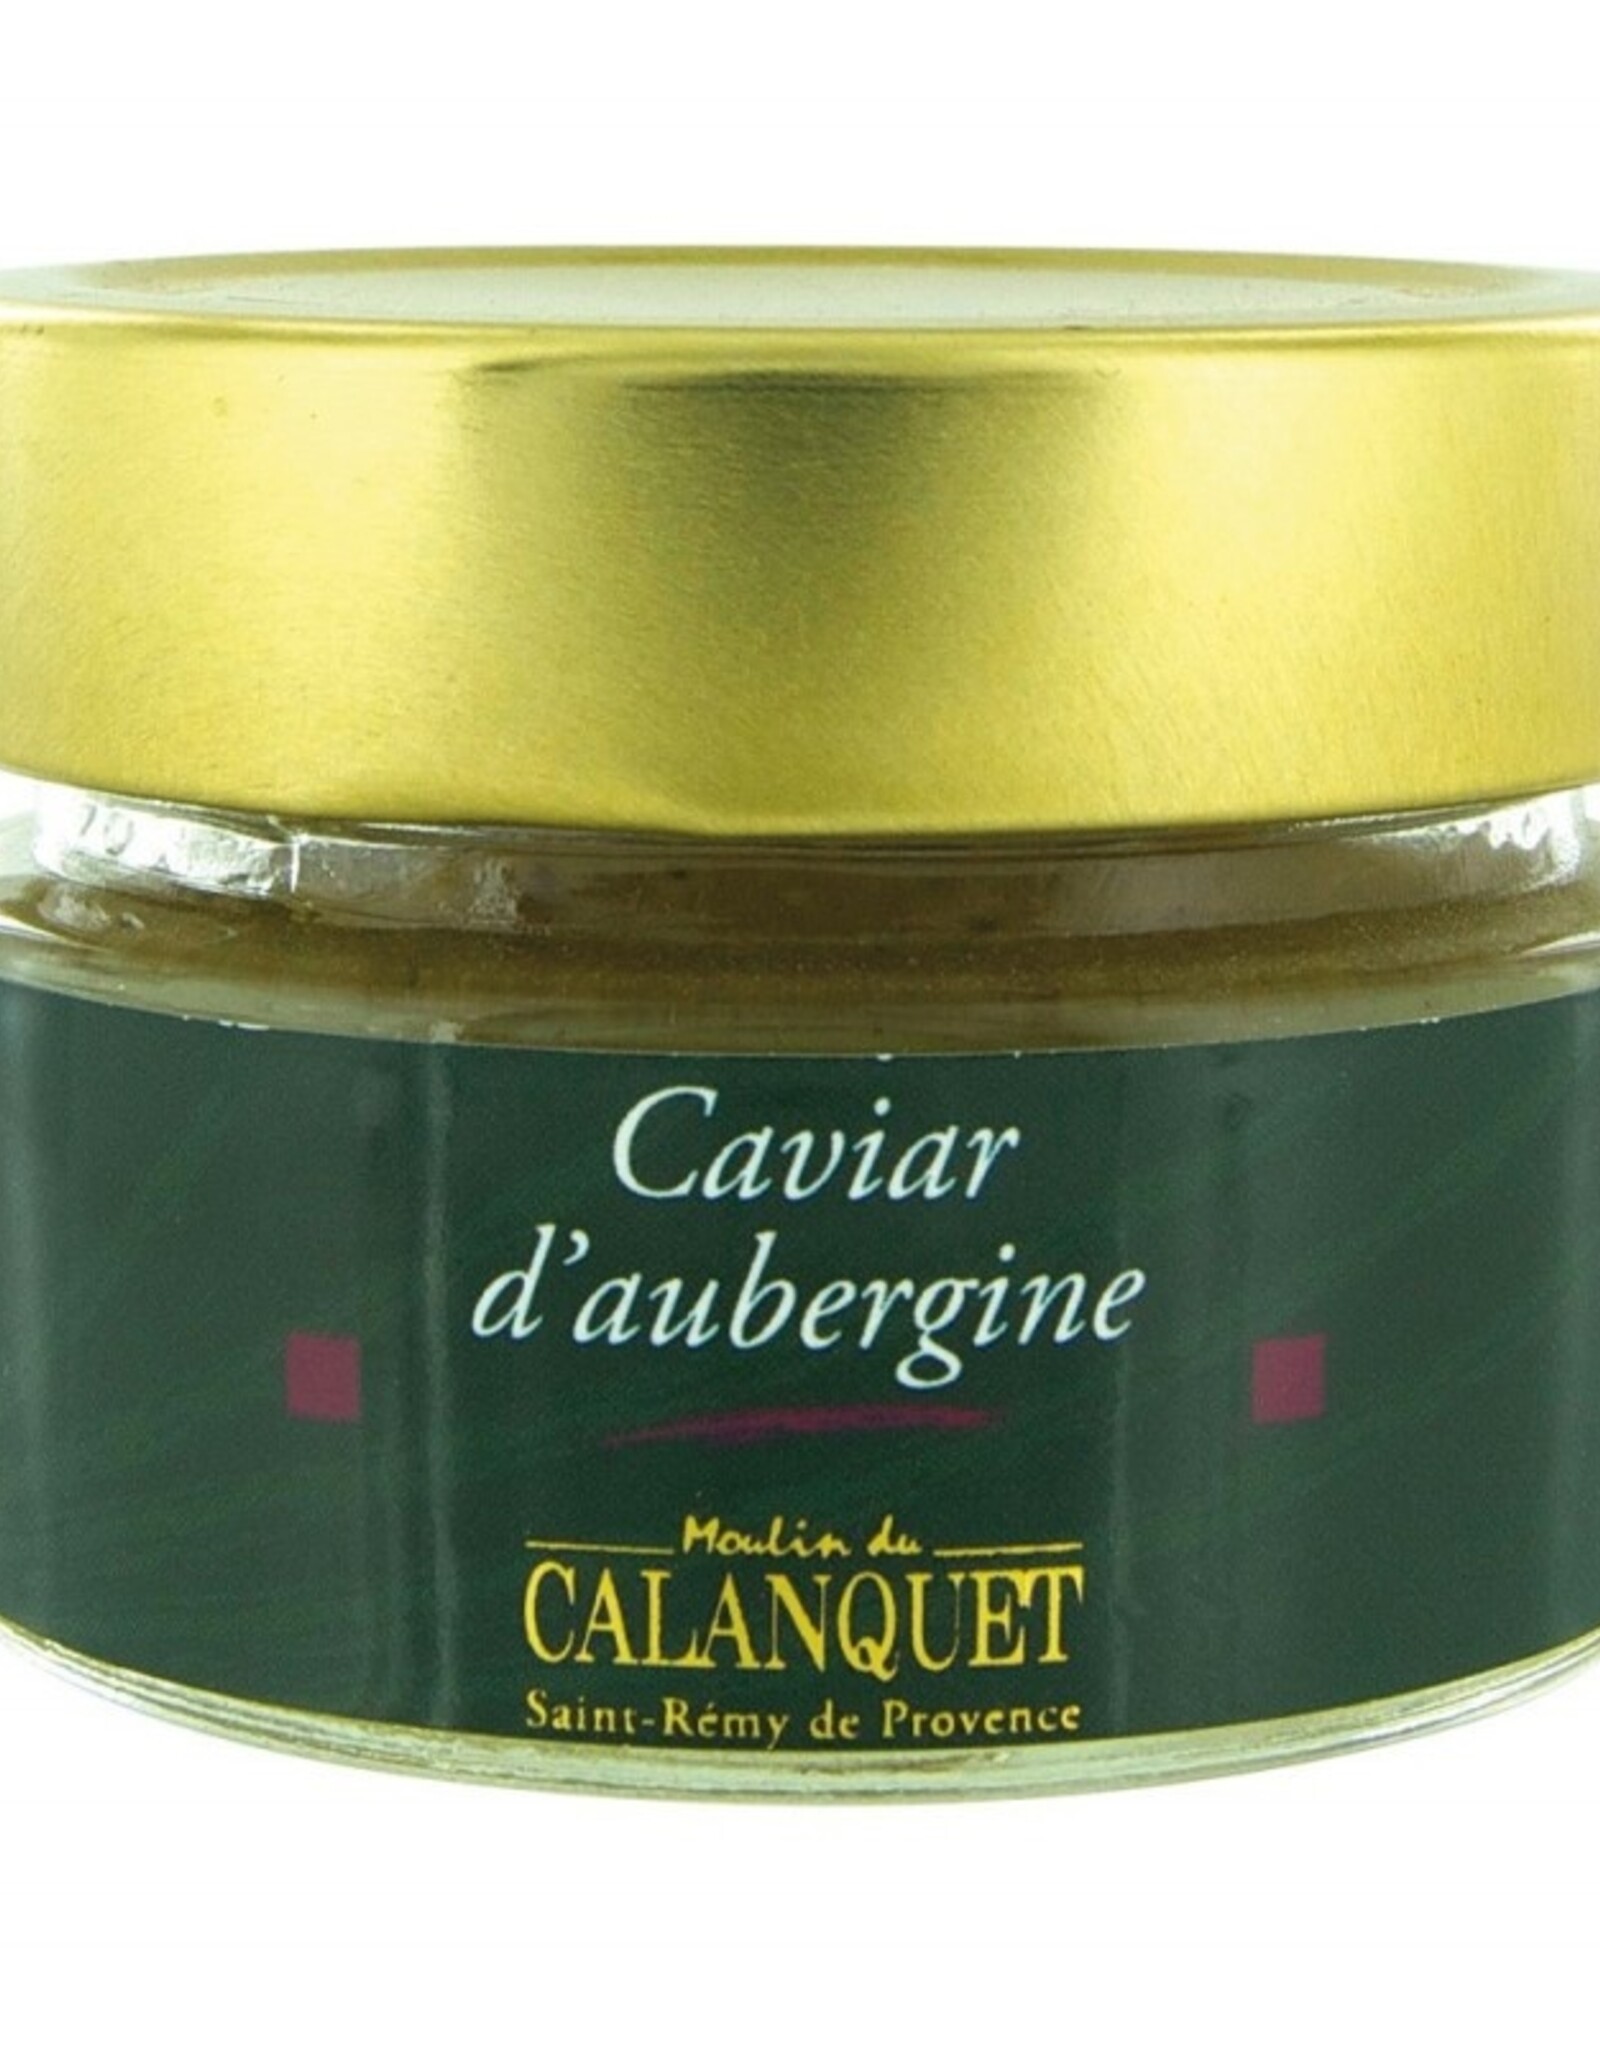 Moulin du Calanquet Caviar d'aubergine / Aubergine Caviar 90 g